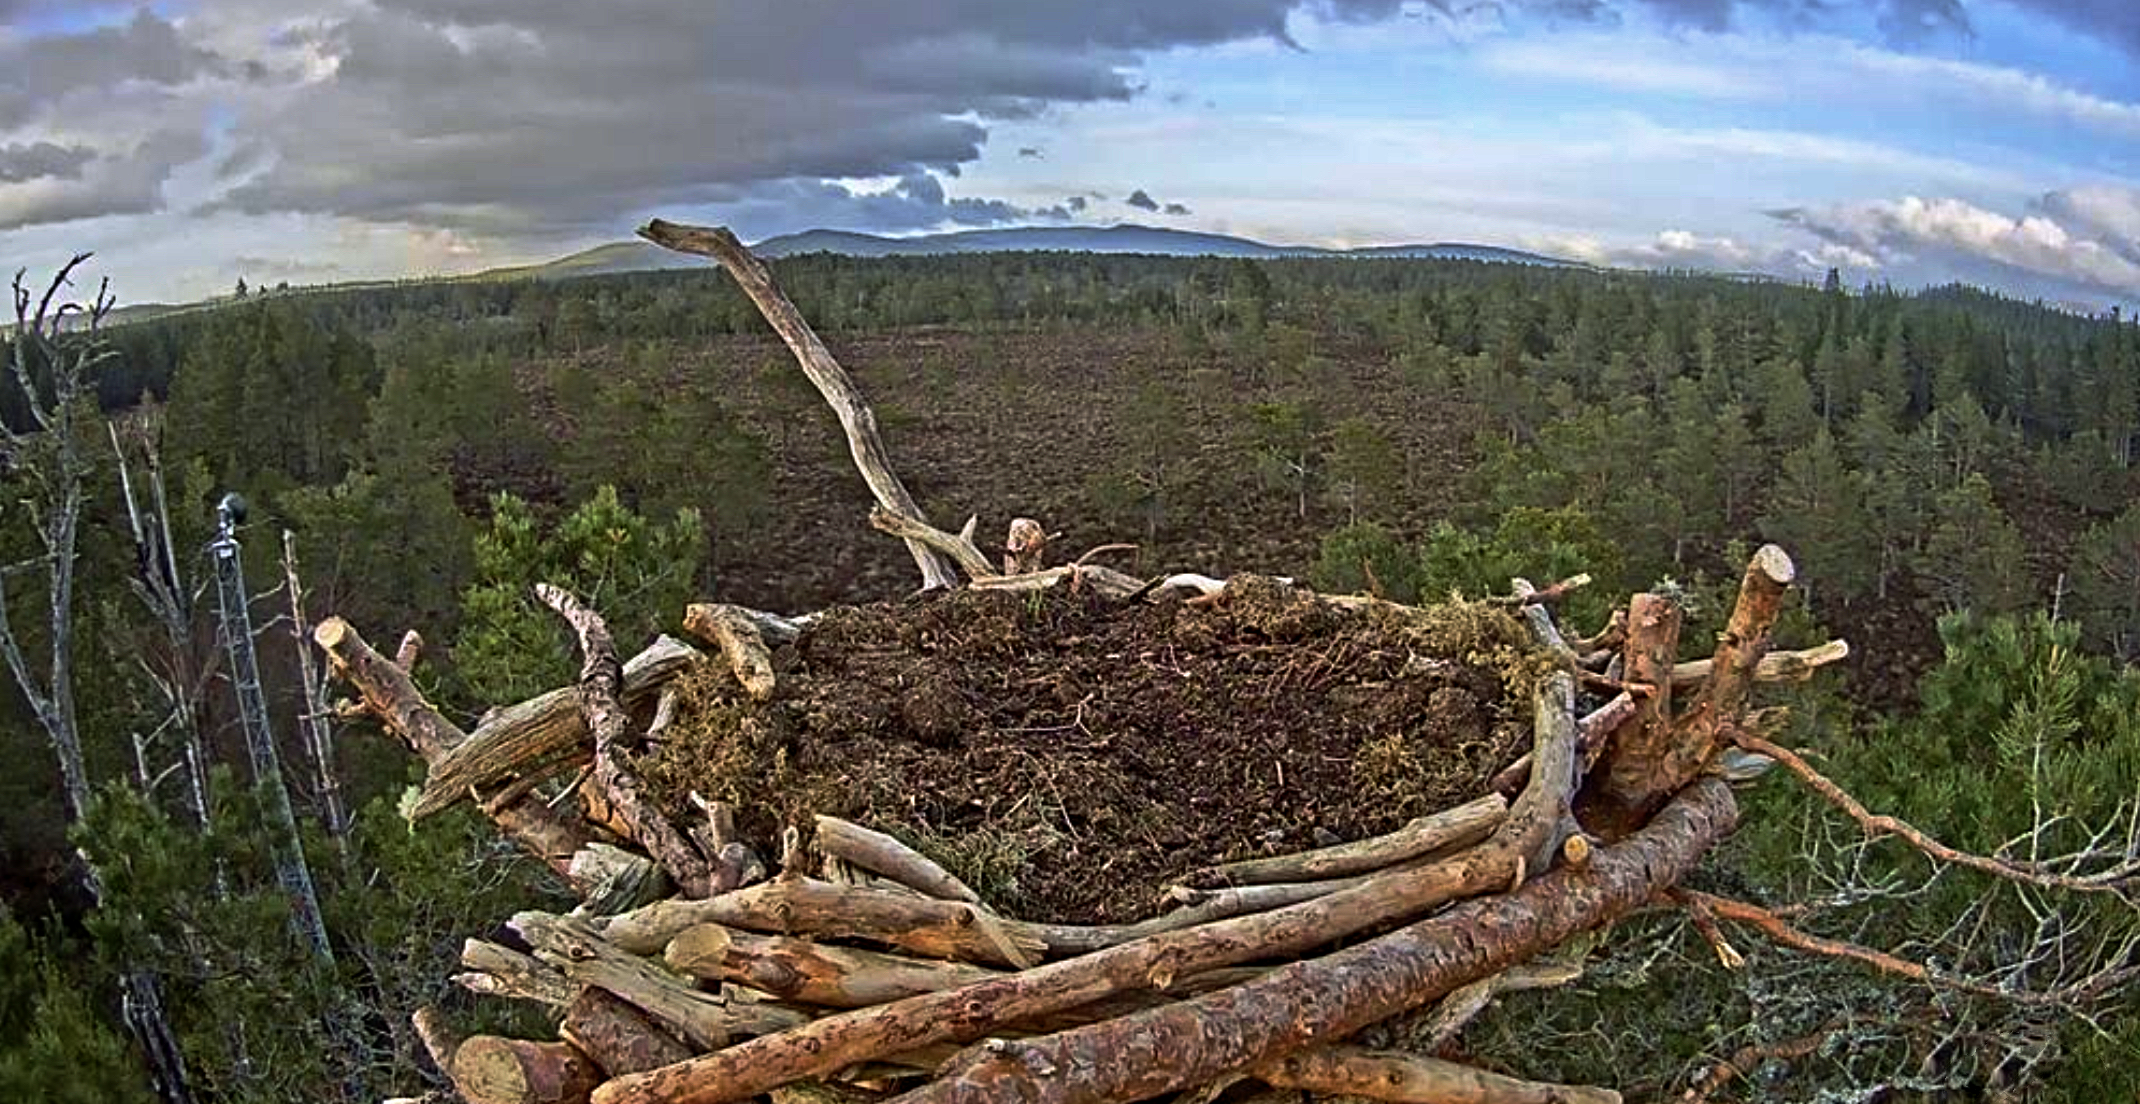 A screen grab from the Loch Garten Osprey nest webcam